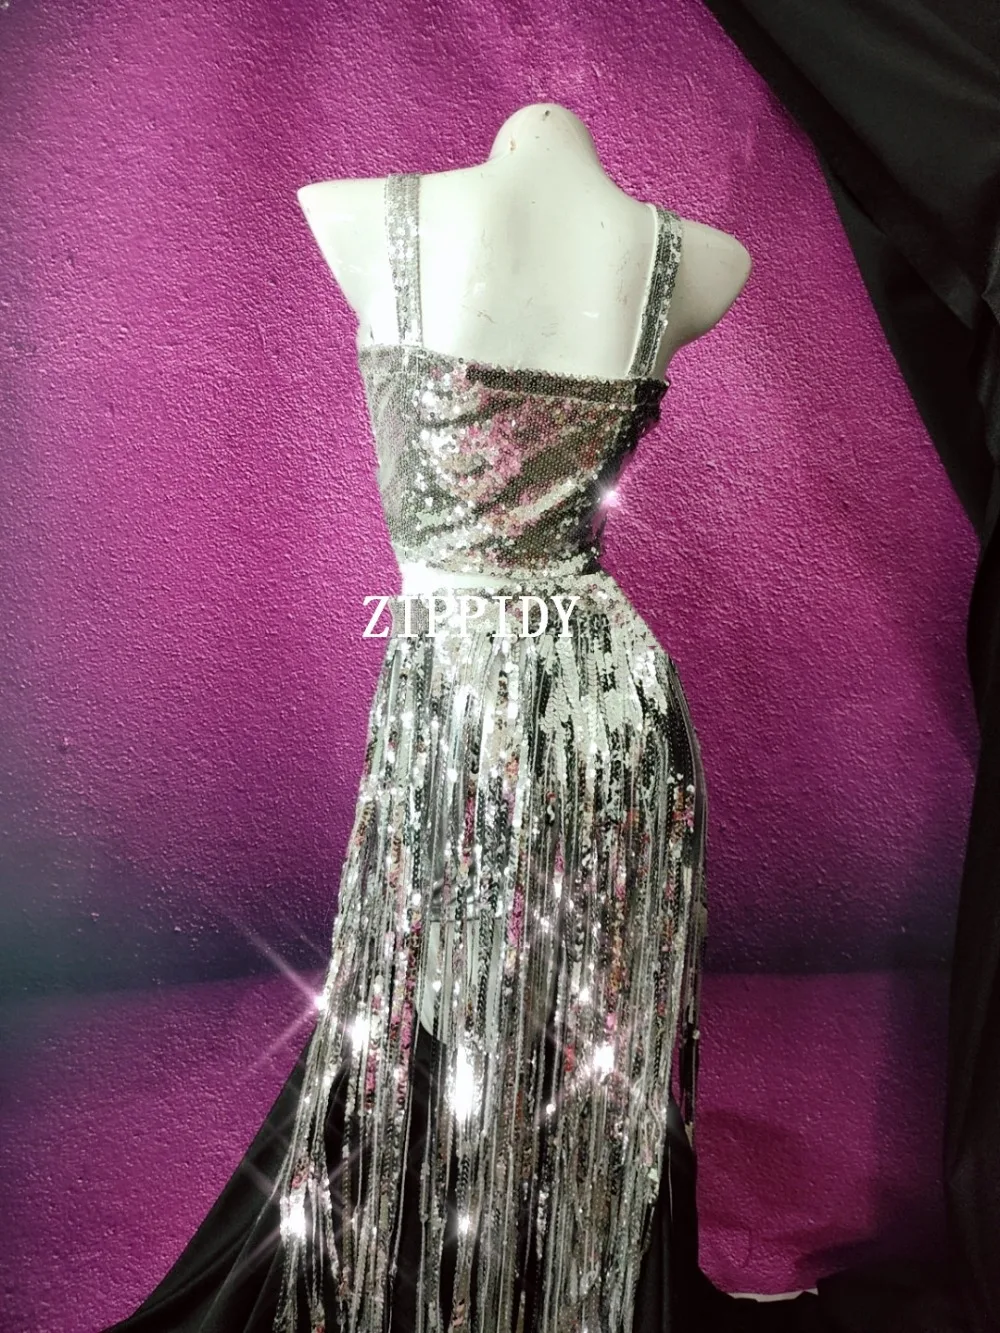 Блестящие серебряные блестки Бюстгальтер бахрома короткий танцевальный наряд комплект для женщин певица танцевальная одежда Сияющий сценический костюм День рождения